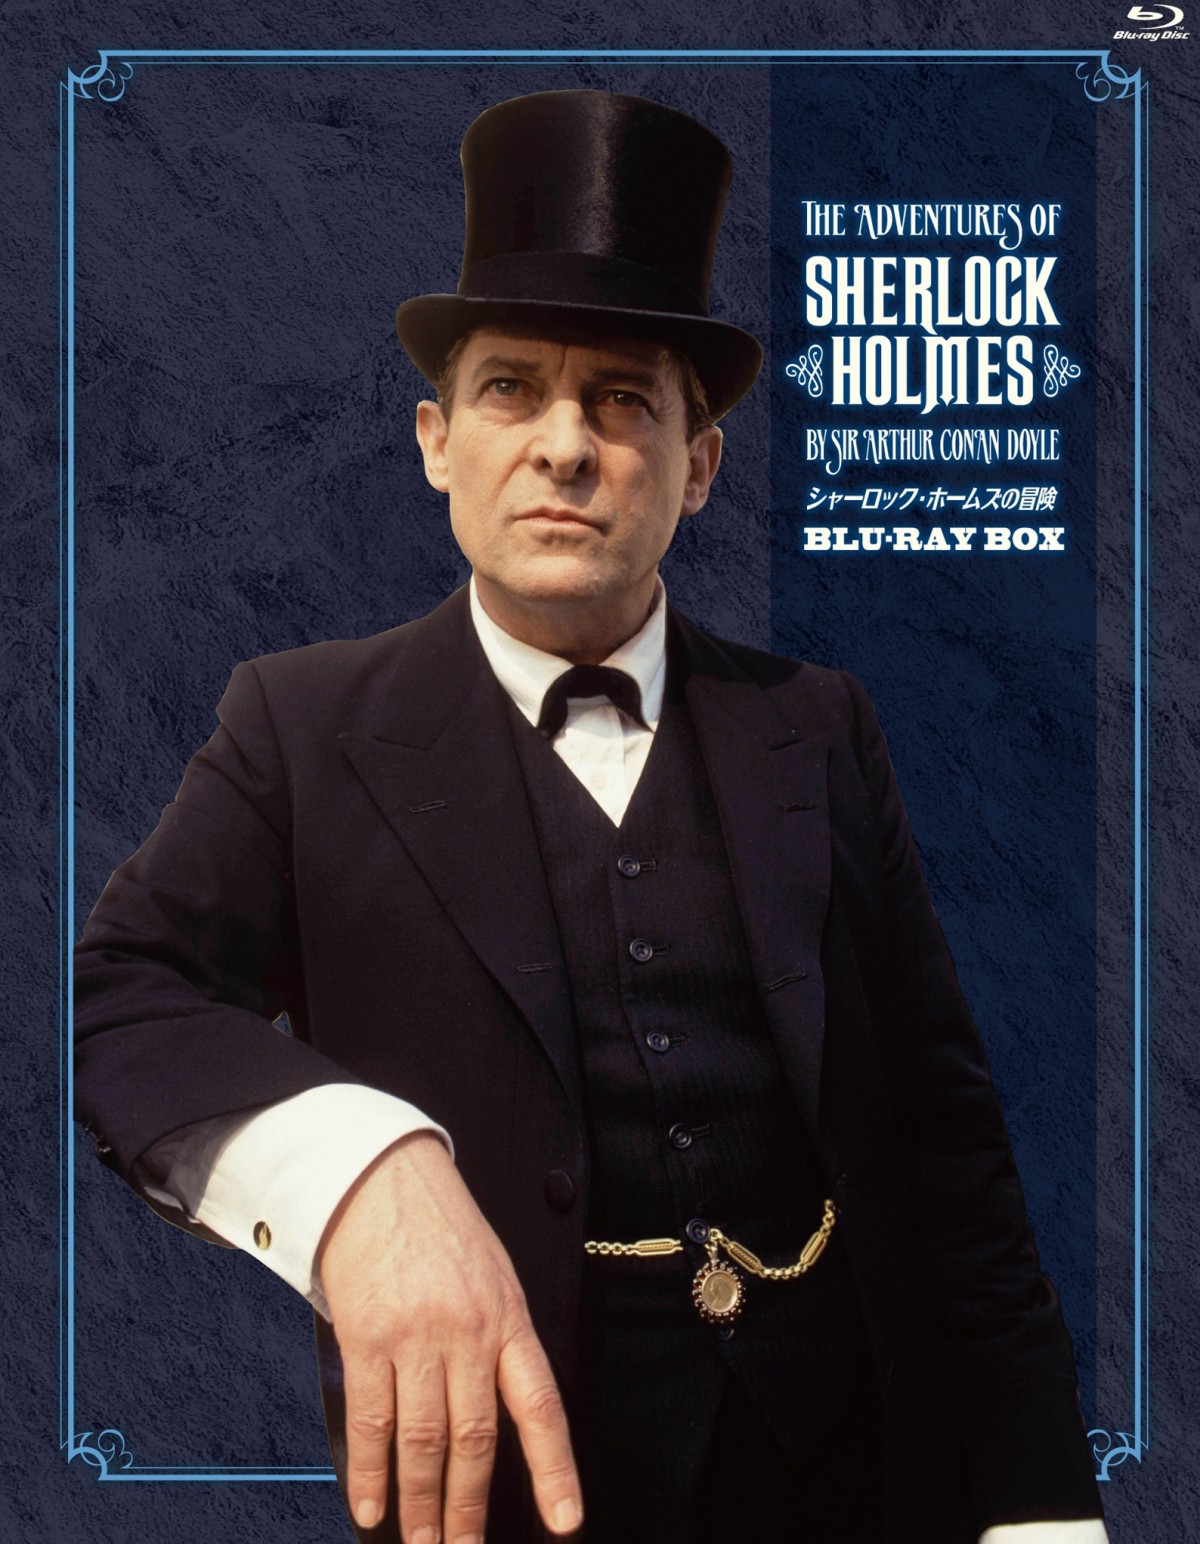 シャーロック ホームズの冒険 名作グラナダ版が世界初ブルーレイ化 名言集 キャストインタビューの豪華ブックレット付 12年12月27日 海外ドラマ クランクイン